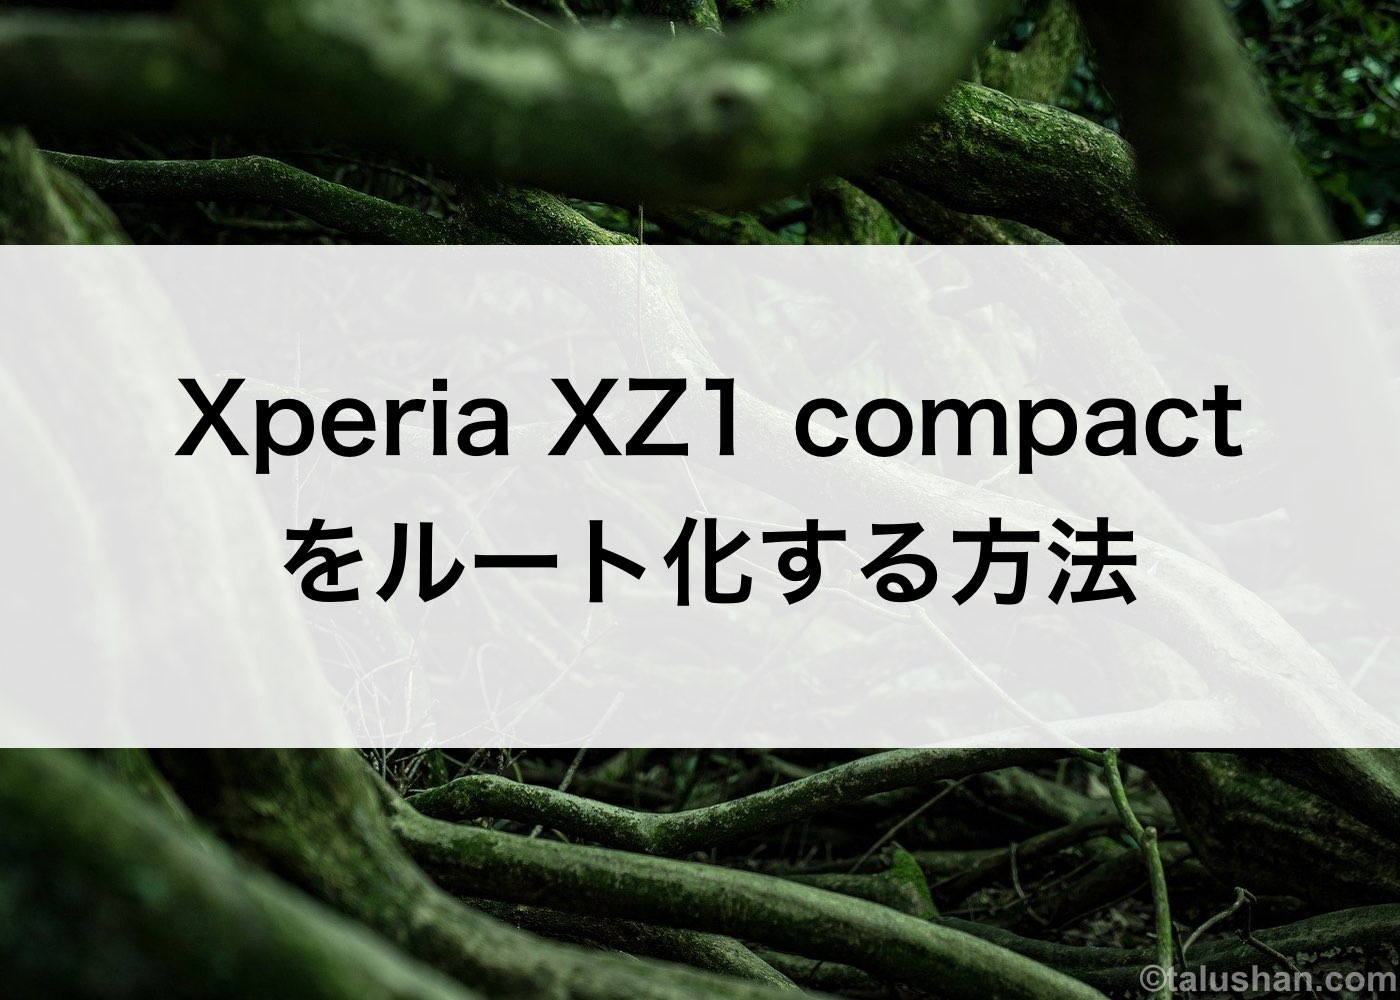 Xperia XZ1 compactをルート化する方法